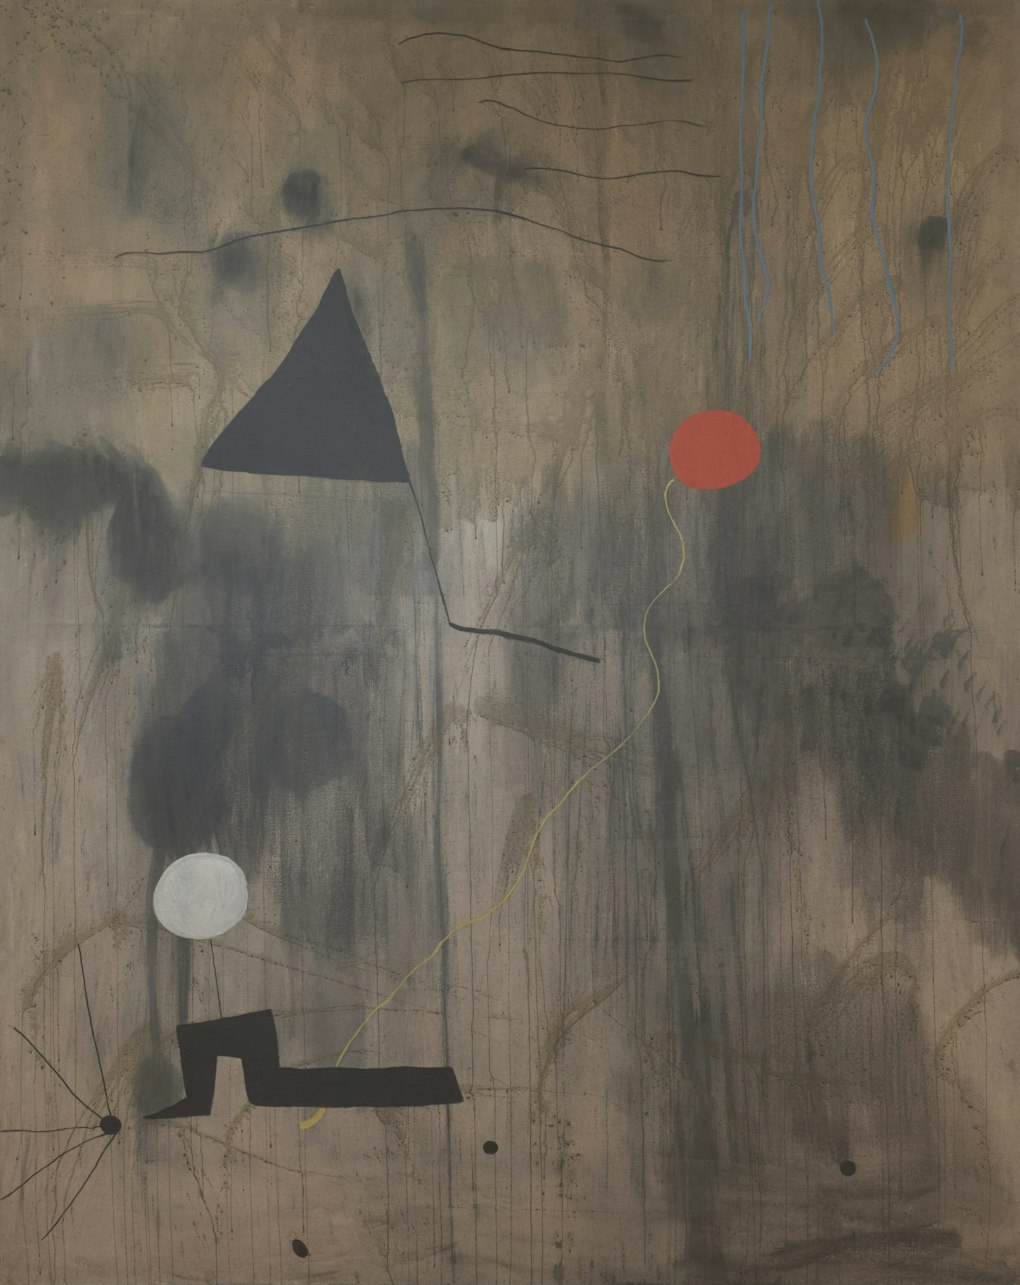 Joan Miró: Birth of the World – The Brooklyn Rail